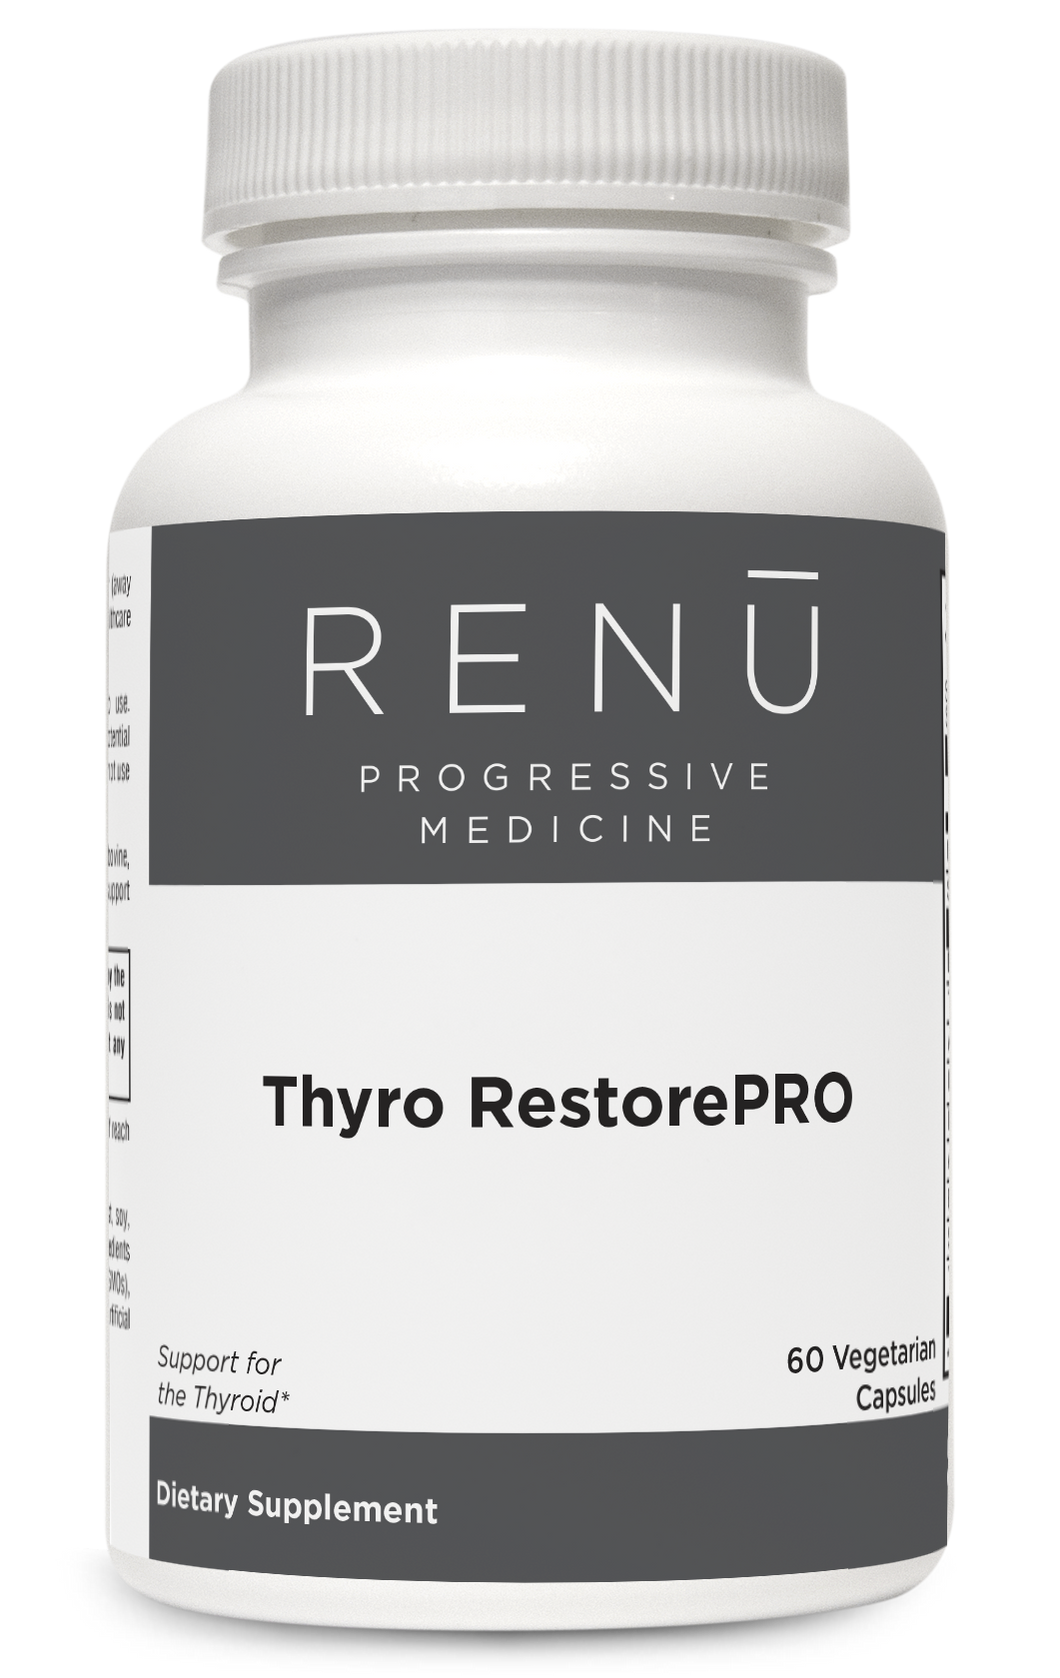 Thyro RestorePRO